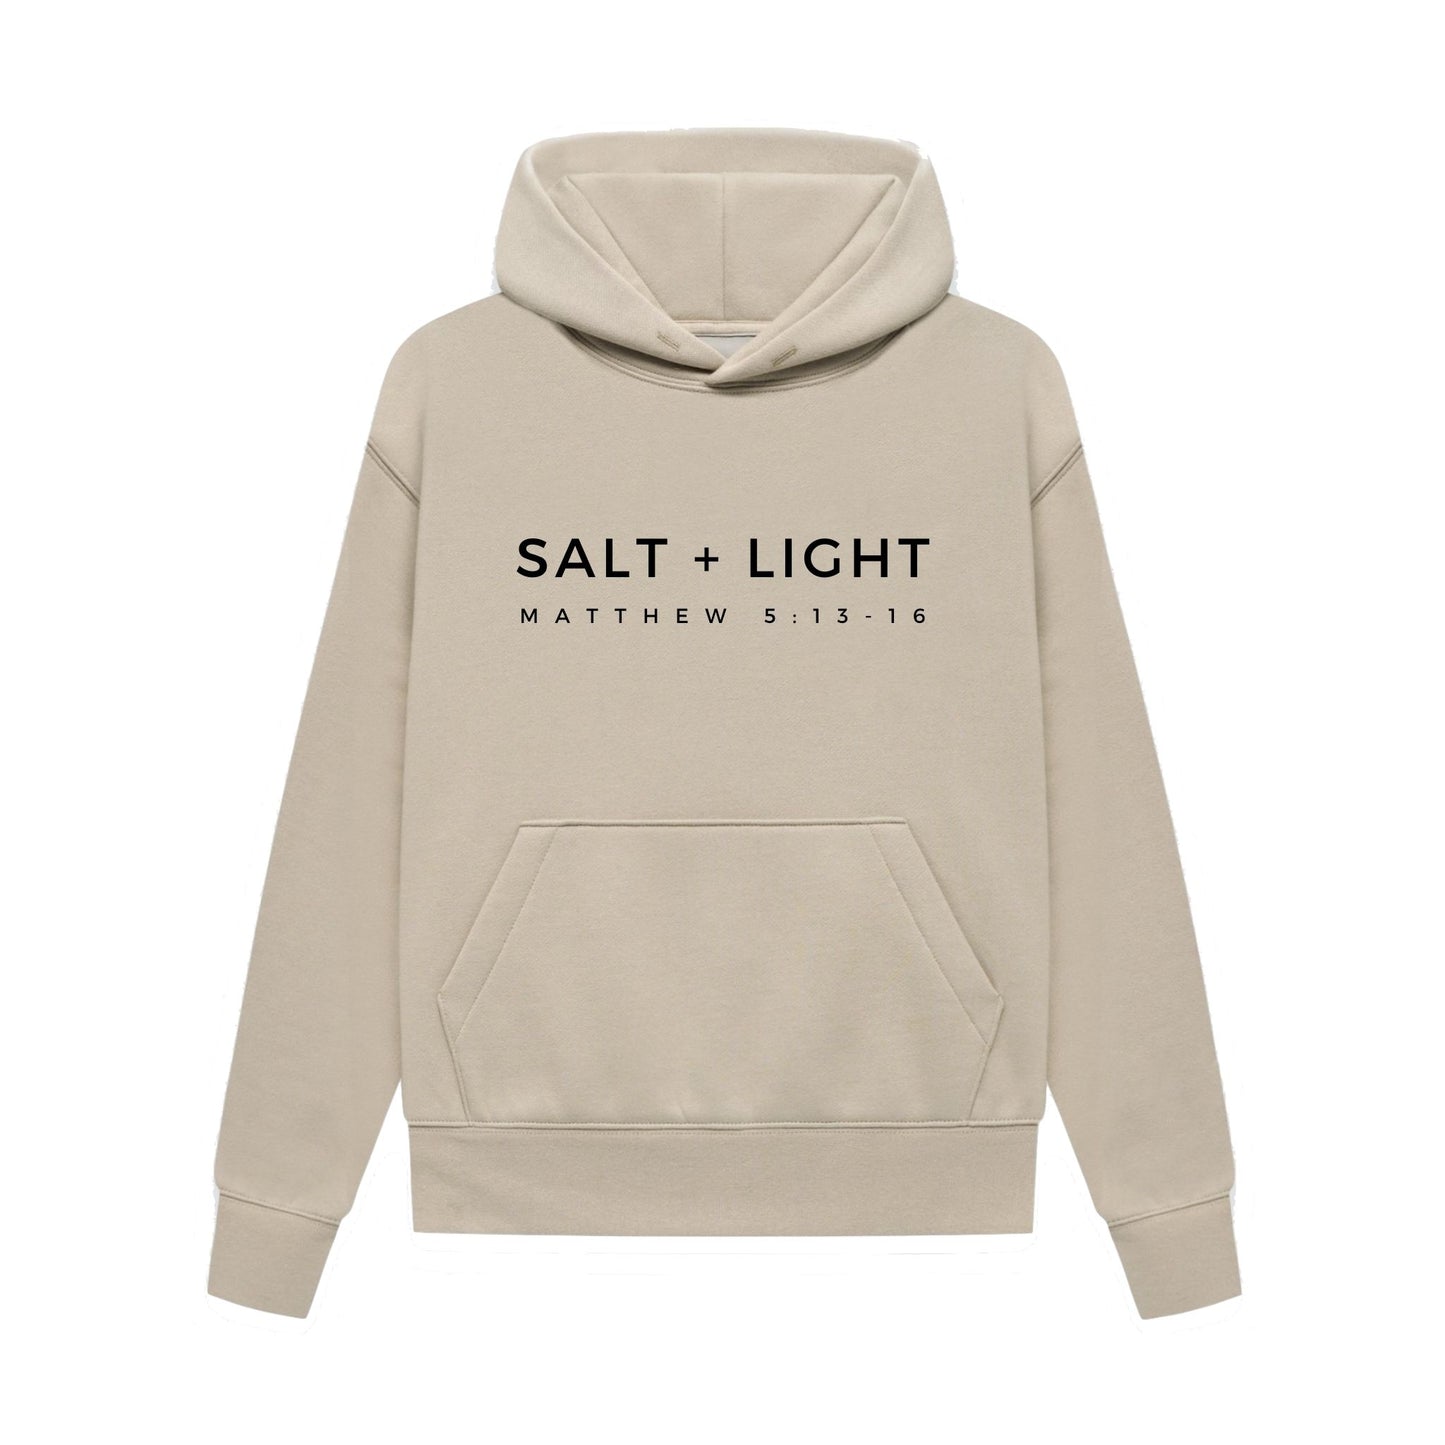 SALT + LIGHT HOODIE